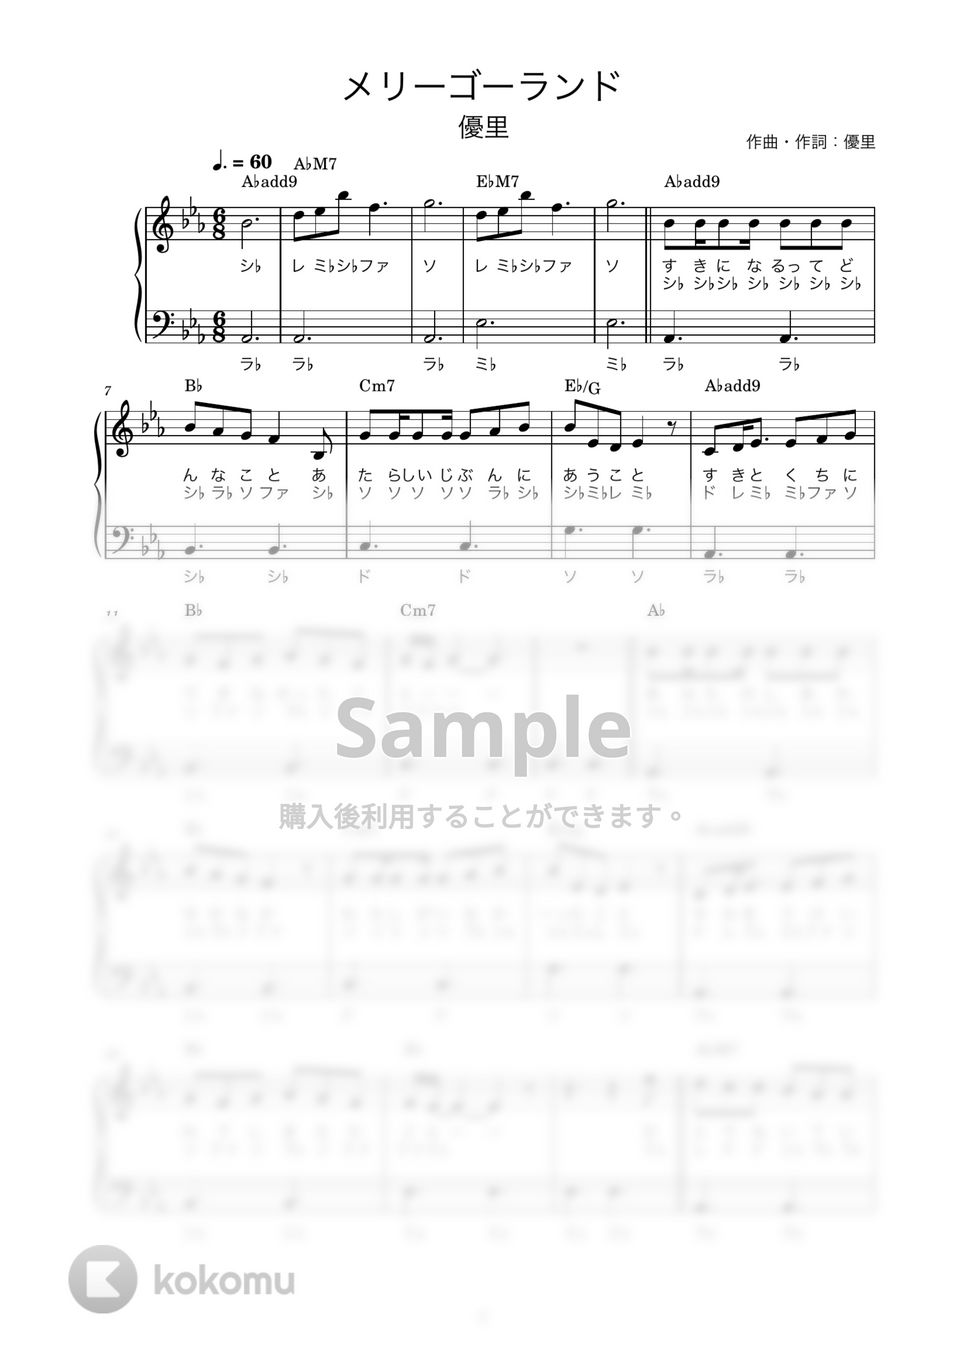 優里 - メリーゴーランド (かんたん / 歌詞付き / ドレミ付き / 初心者) by piano.tokyo